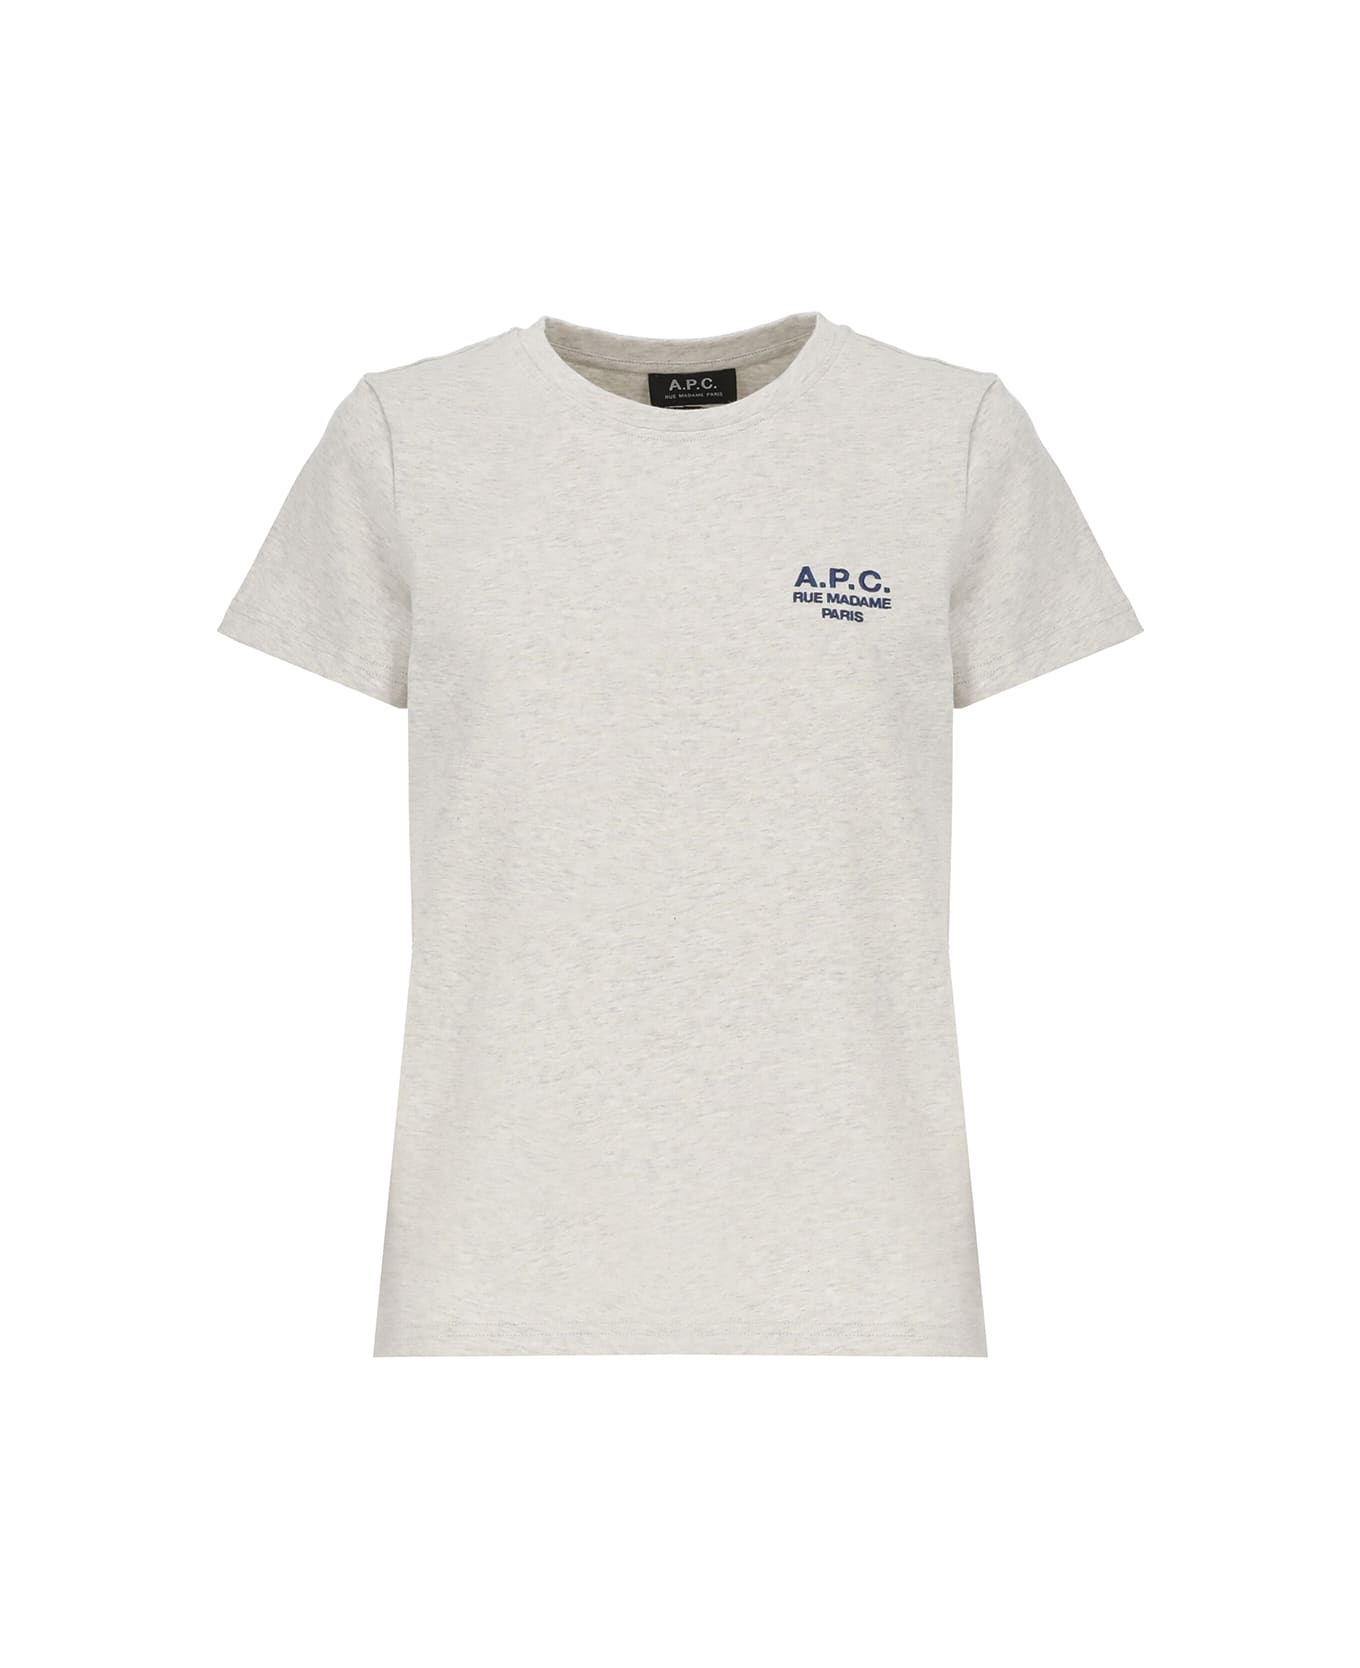 A.P.C. Denise Cotton Crew-neck T-shirt - Grey